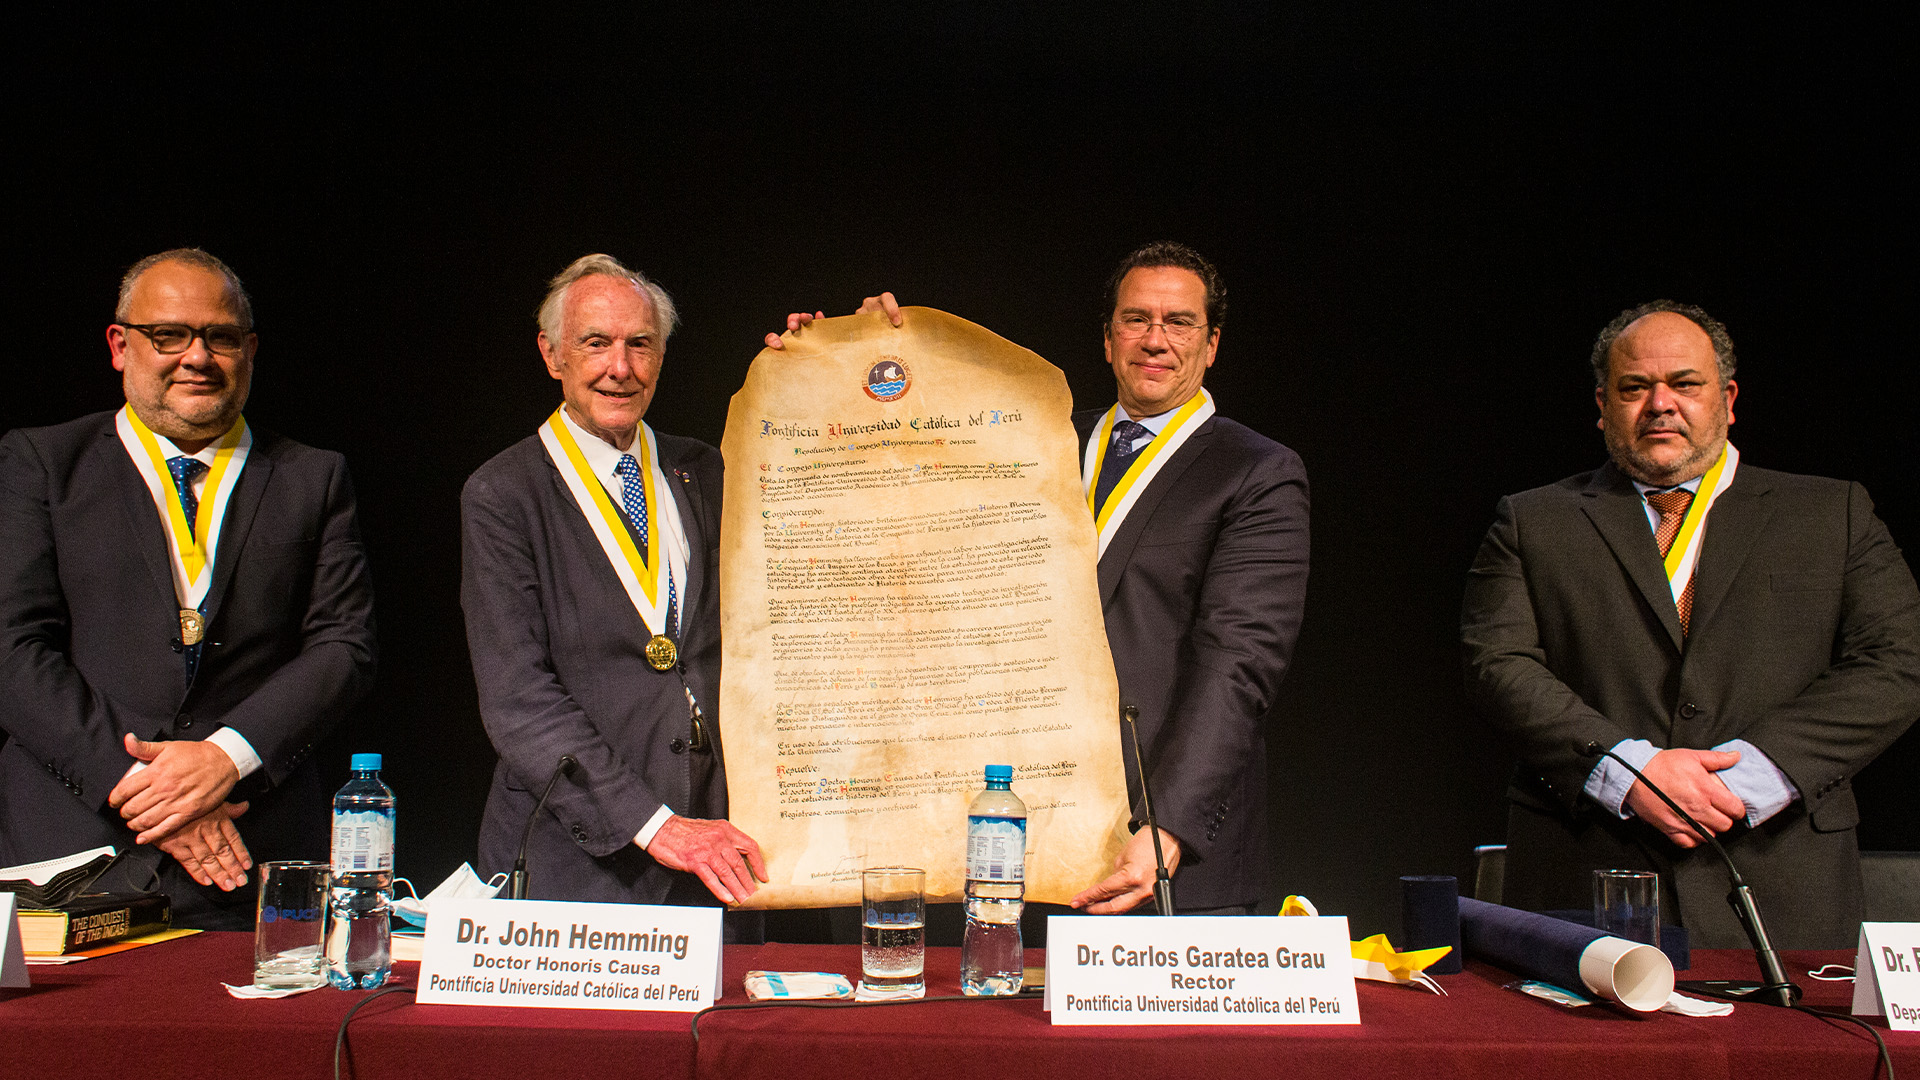 foto de la entrega del doctorado honoris causa a john hemming. está con el rector de la pucp y otros dos señores en terno.